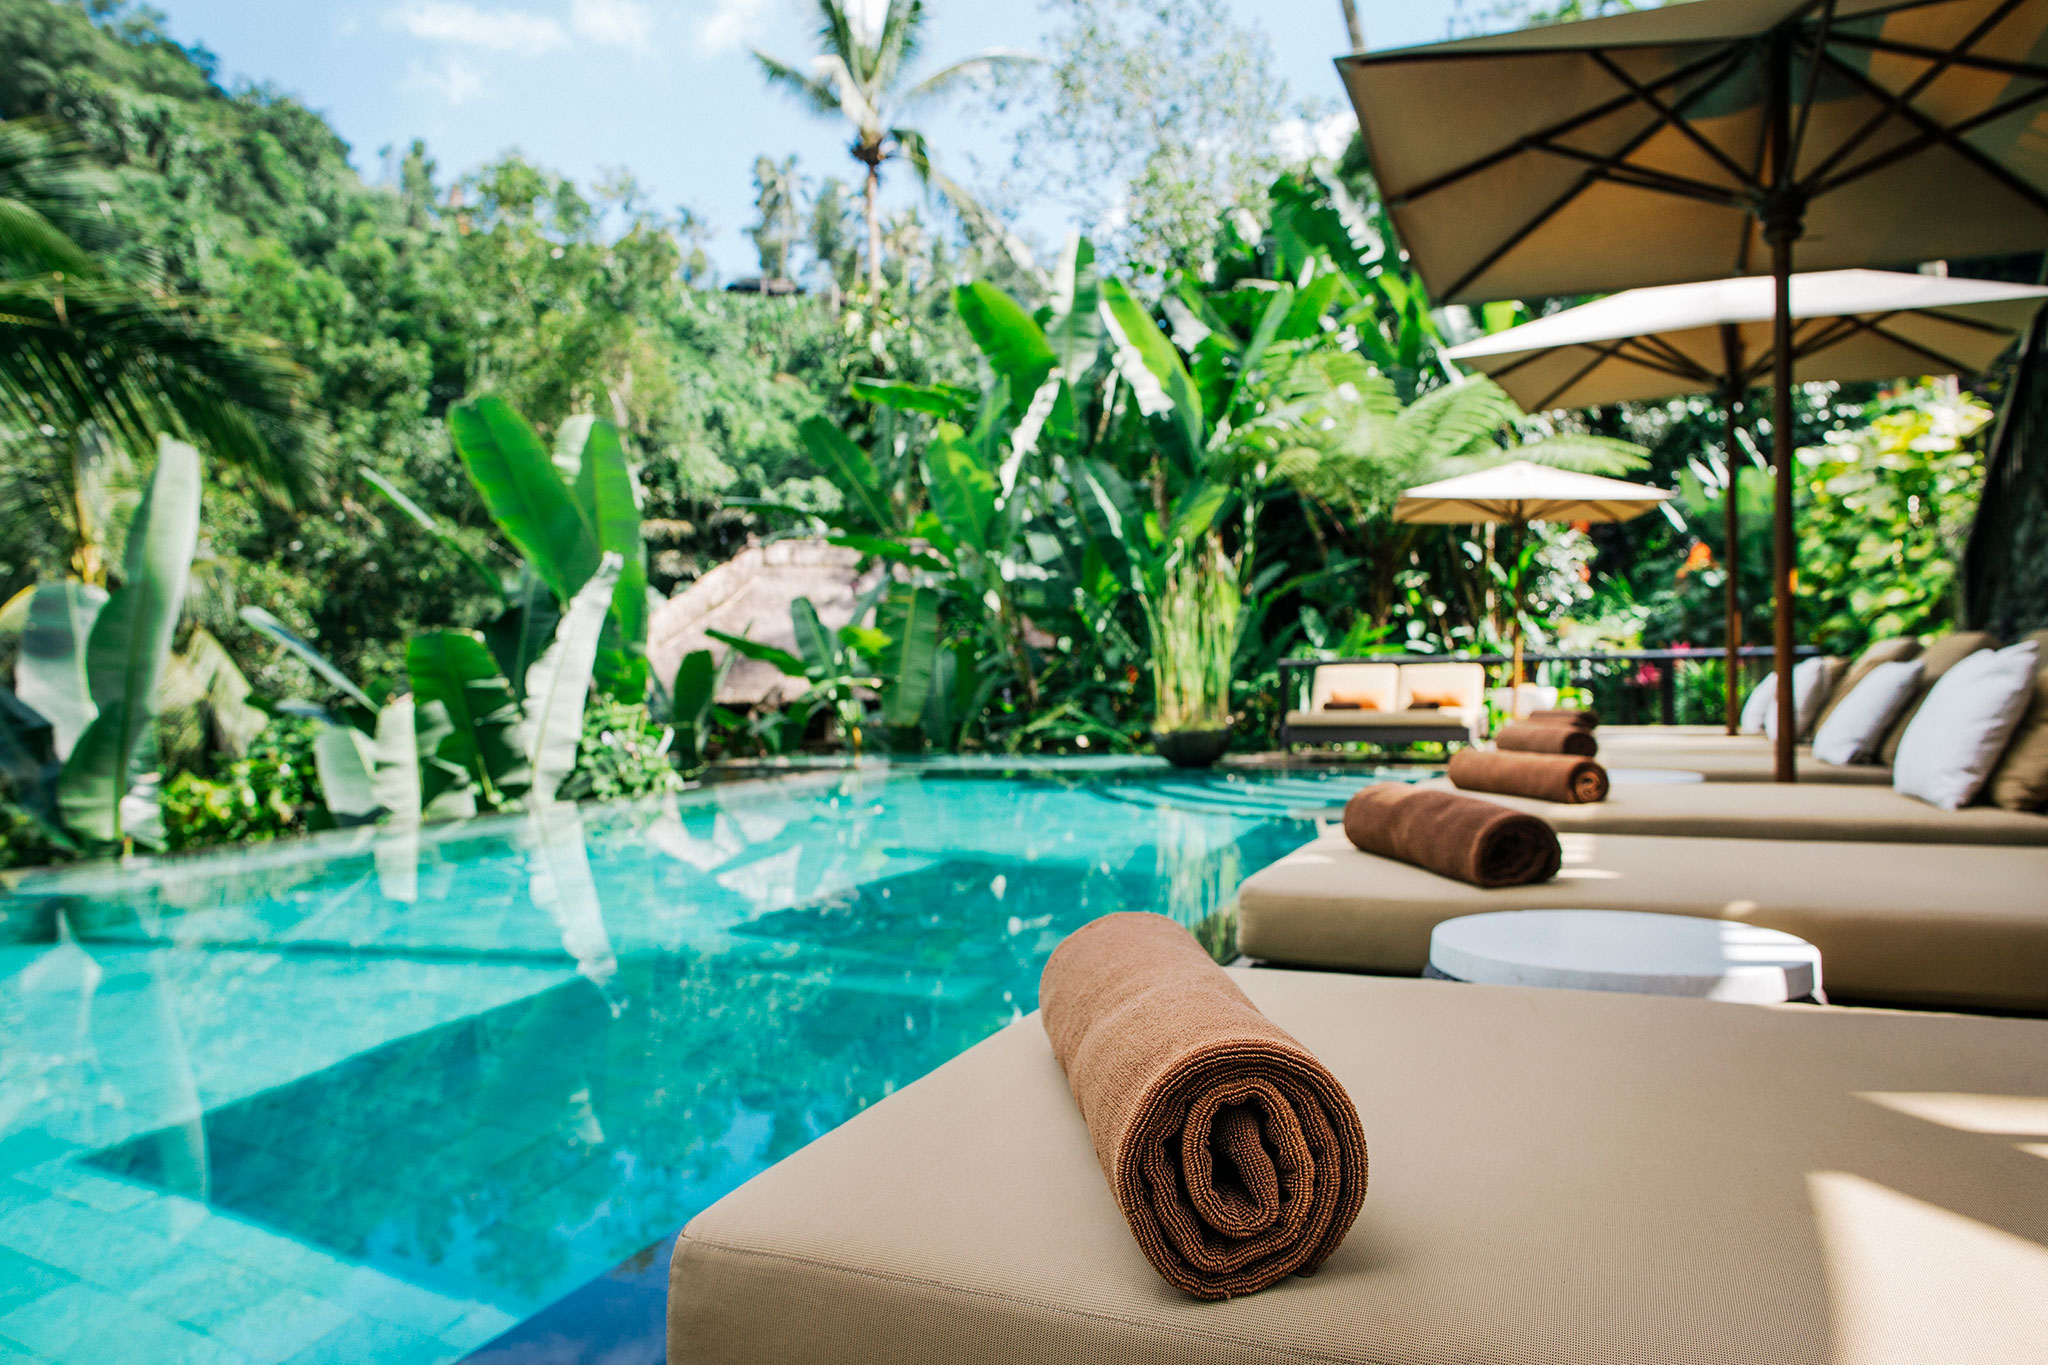 An einem tropischen Swimmingpool warten Liegestühle mit frischen Handtüchern auf ihre Gäste.